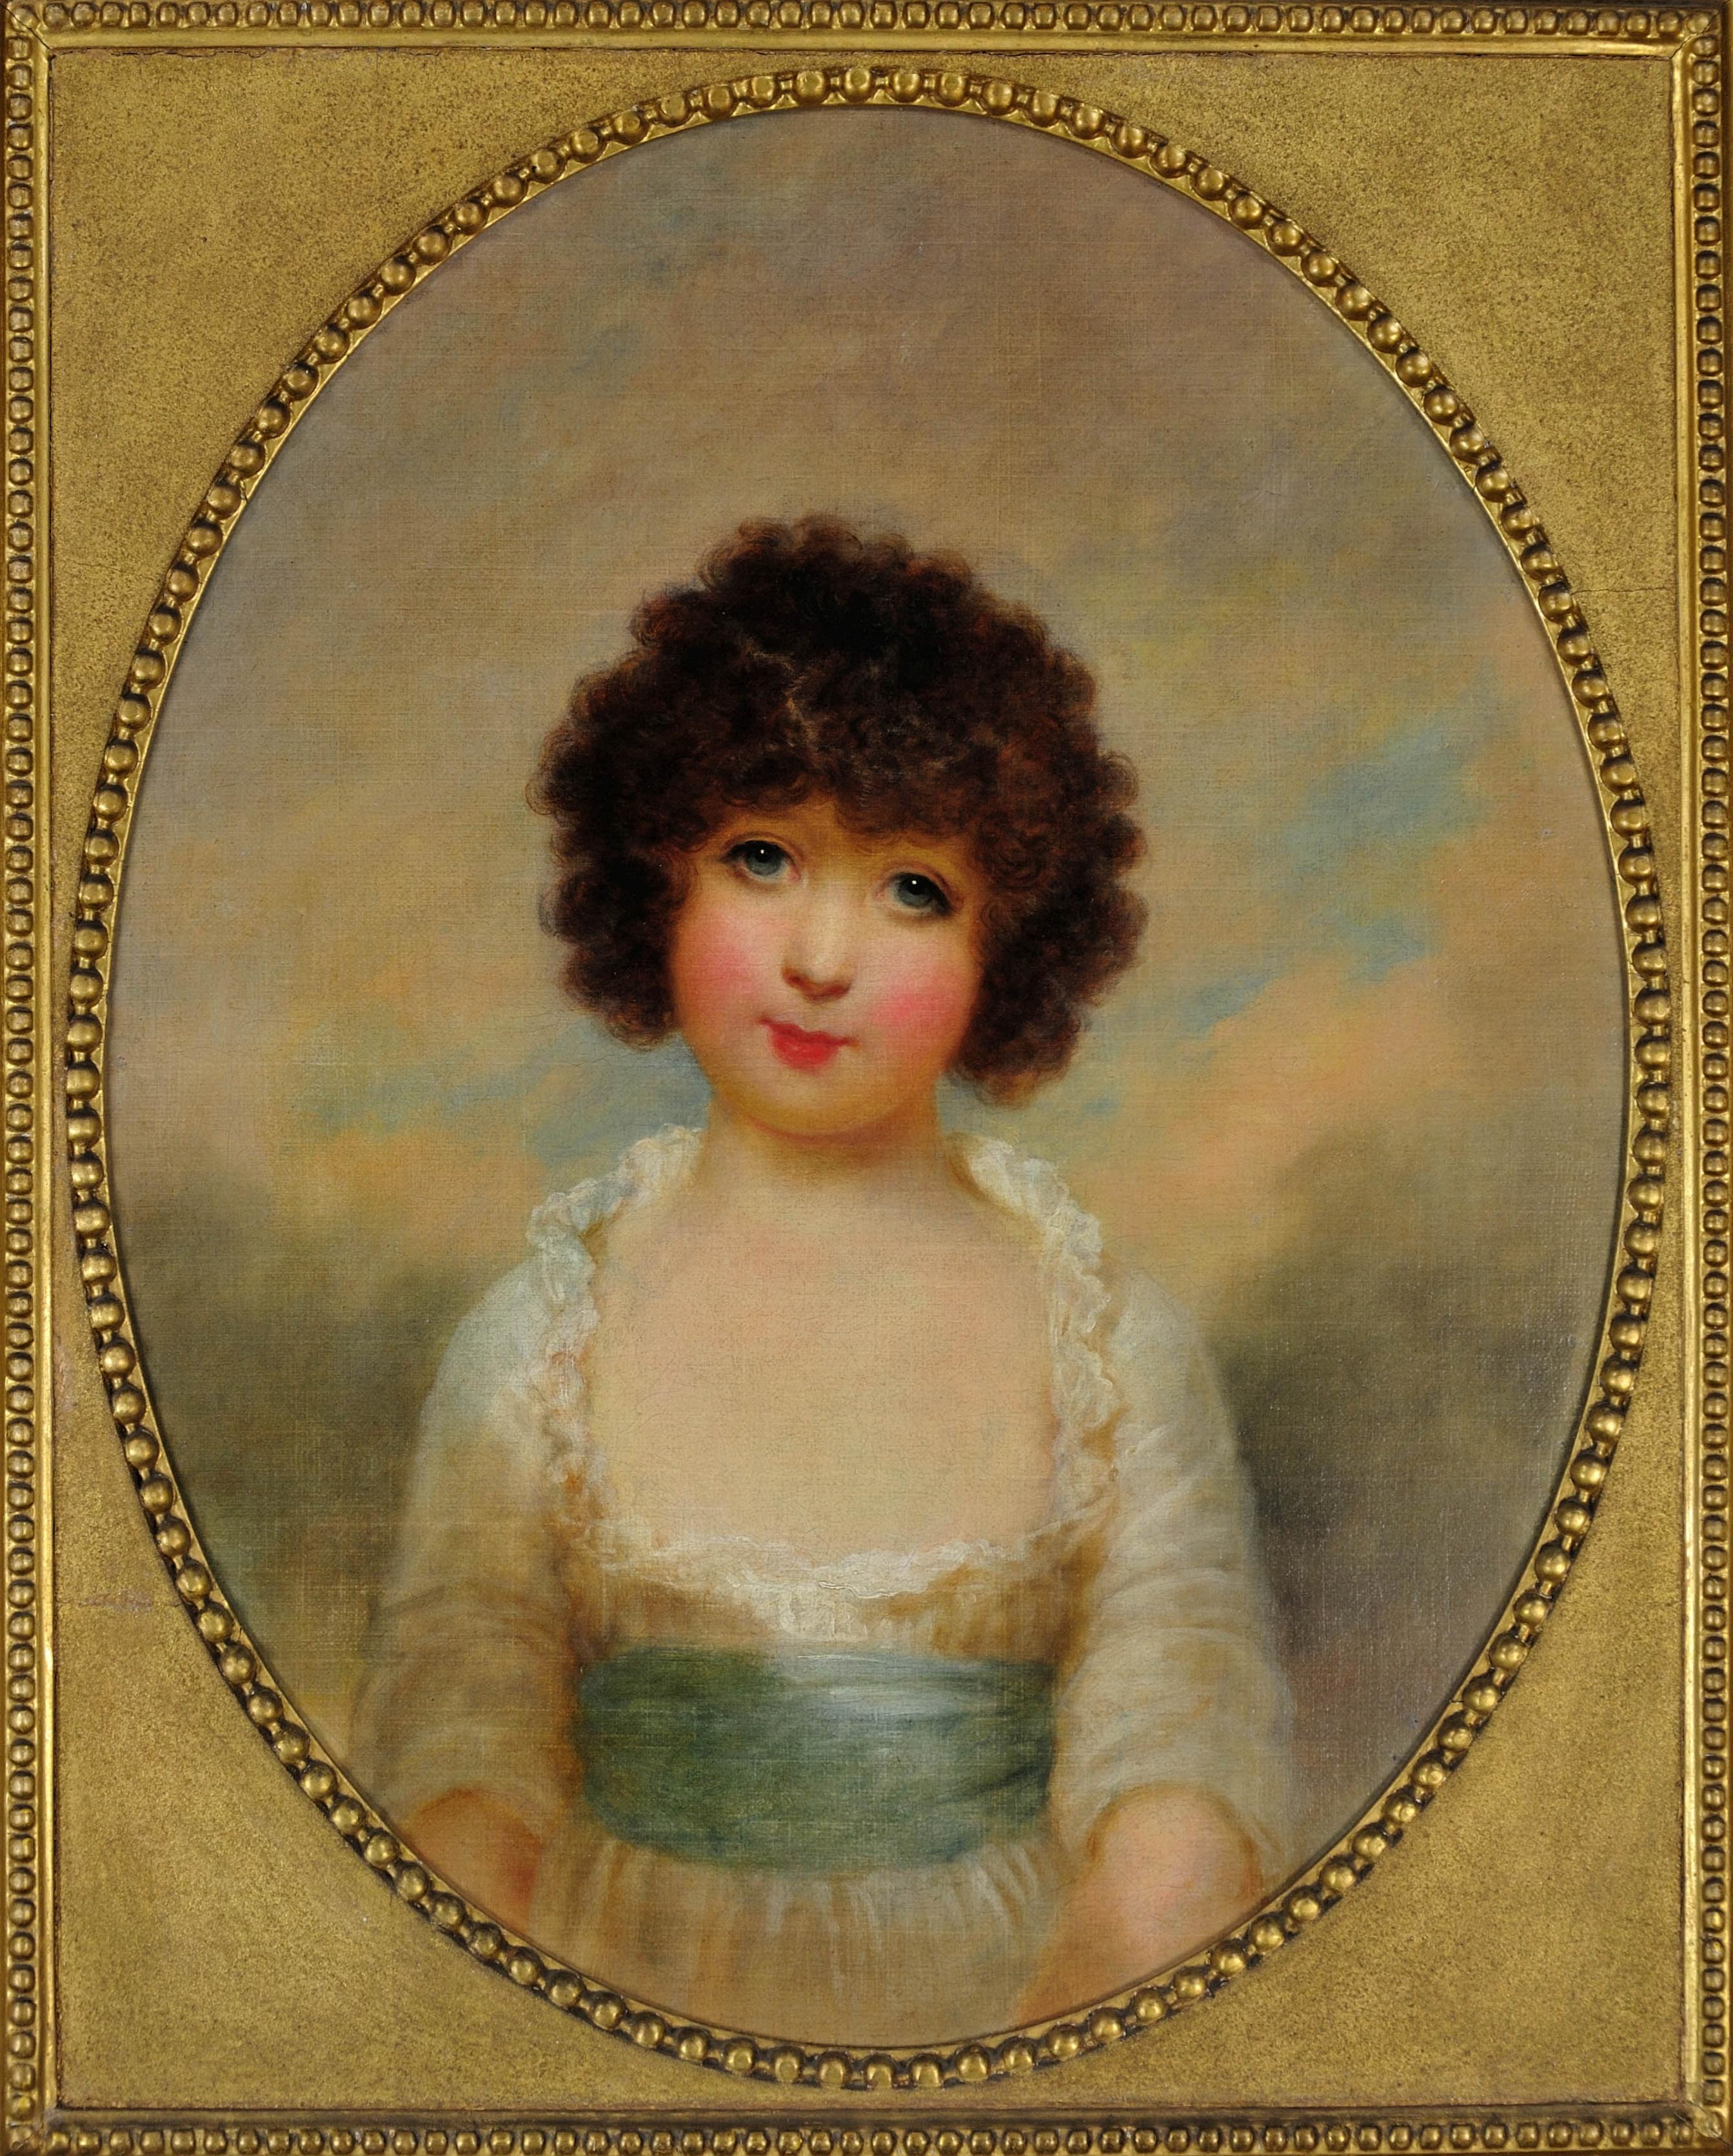 Charlotte Shore, Tochter des 1. Lord Teignmouth. Porträt in Indien 1792 bis 1795. – Painting von Arthur William Devis